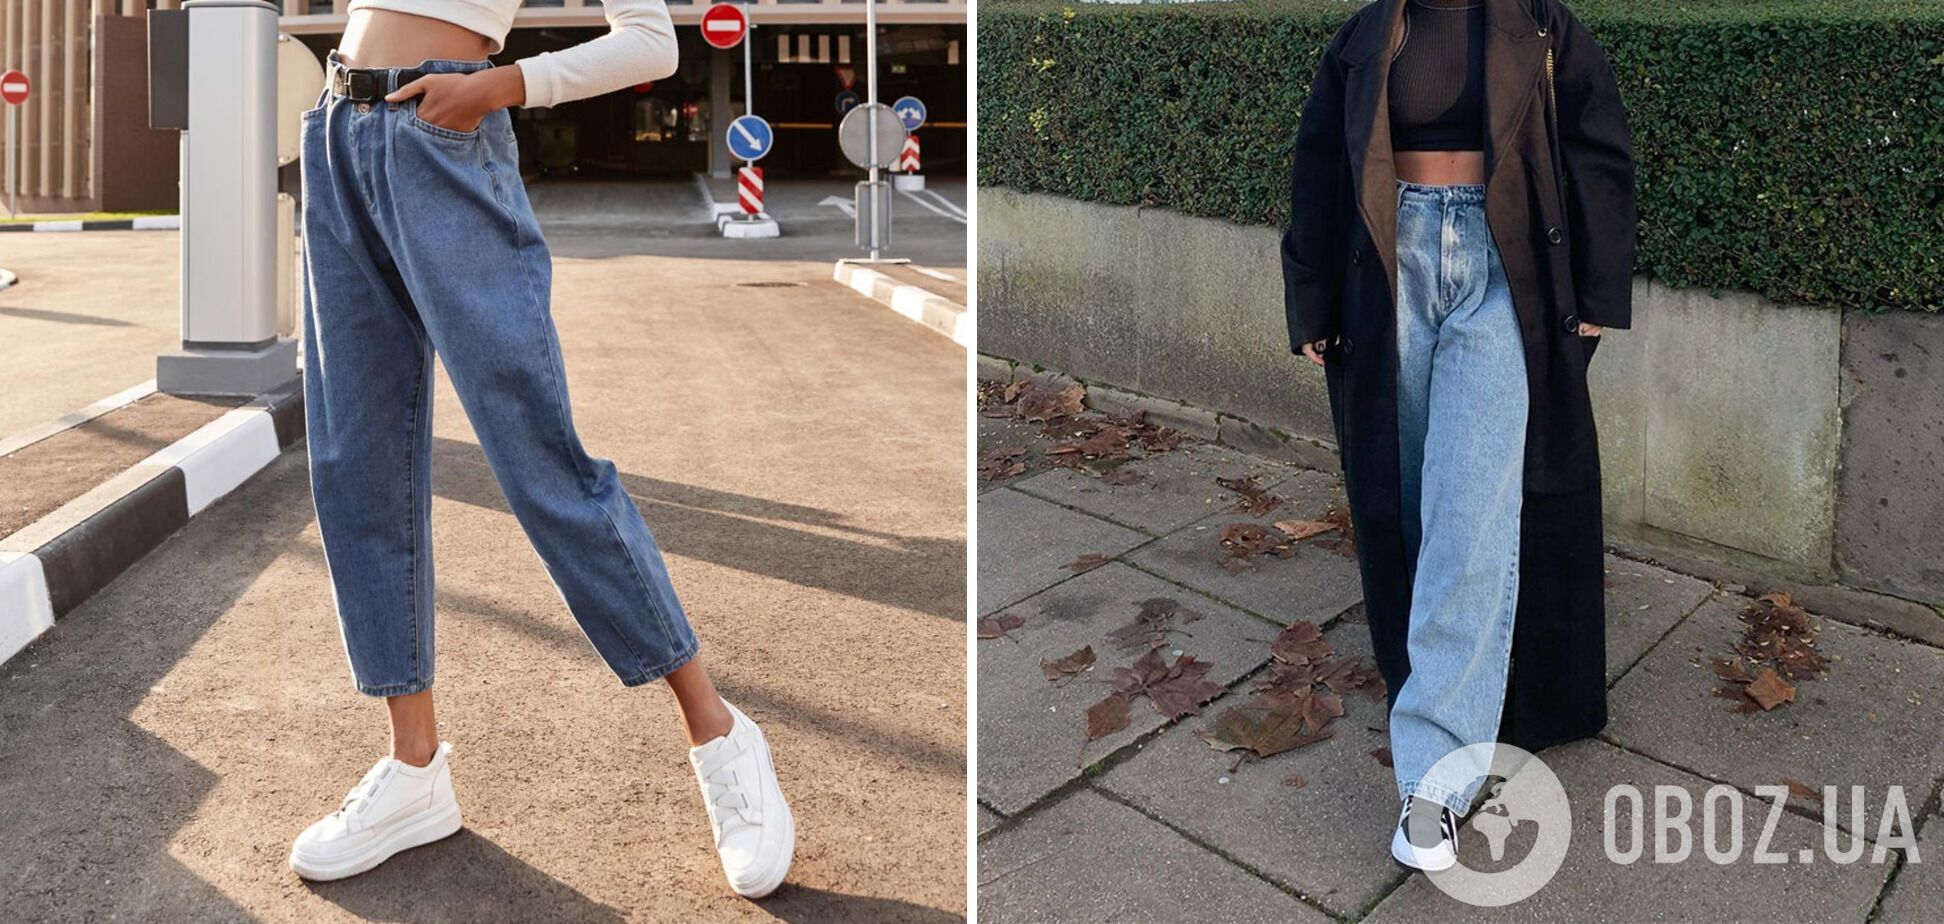 Широкие джинсы – один из забытых трендов